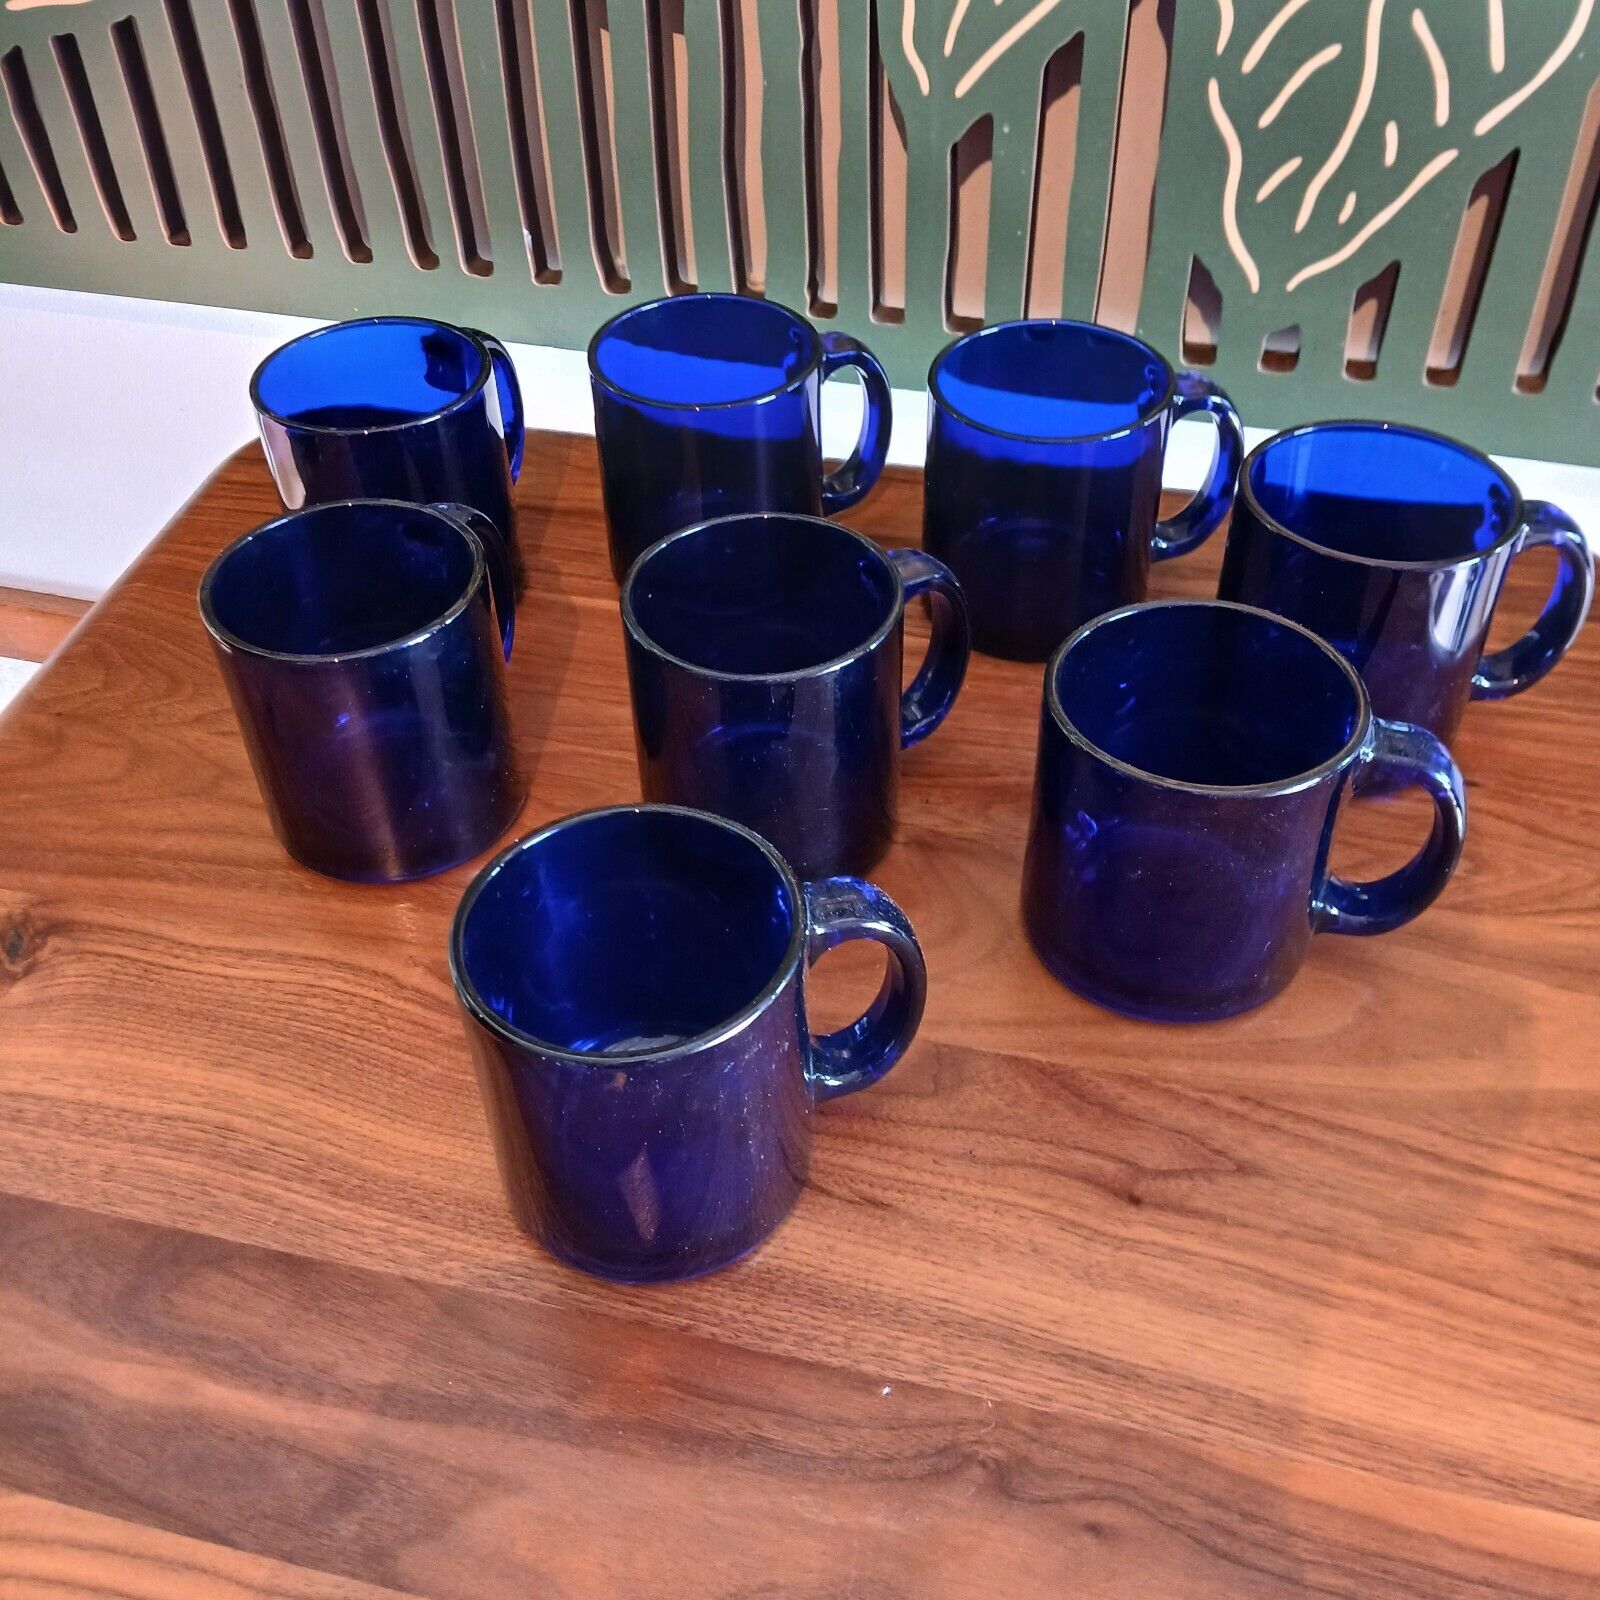 Retro Vtg. Cobalt Blue Glass Coffee Mugs Cups Set of 8 Made in USA 12 oz